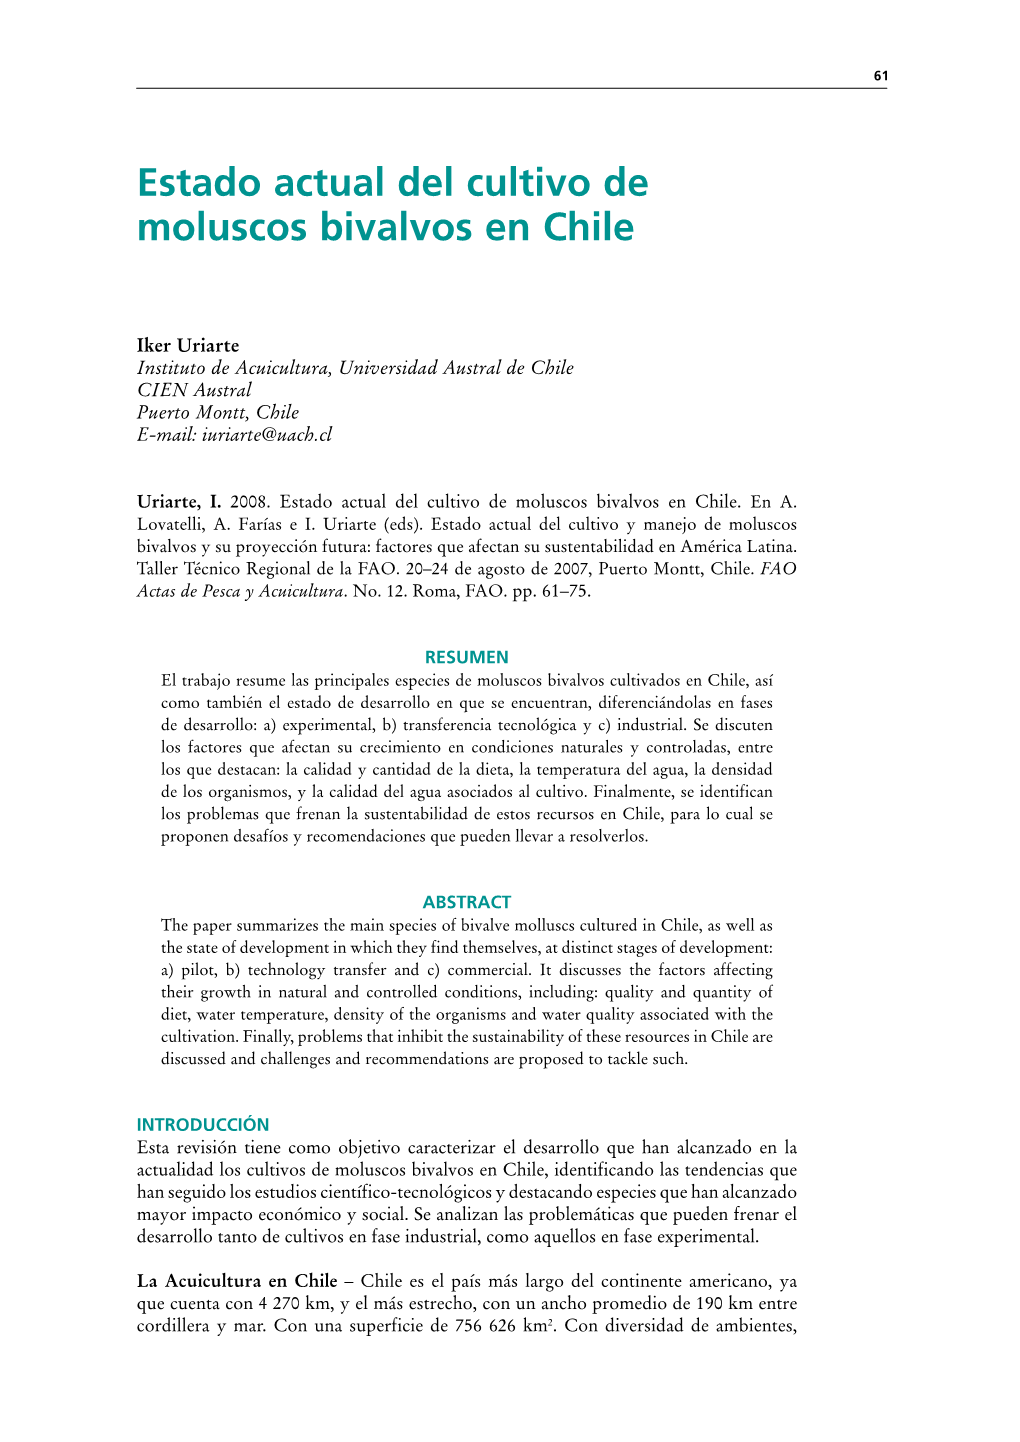 Estado Actual Del Cultivo De Moluscos Bivalvos En Chile